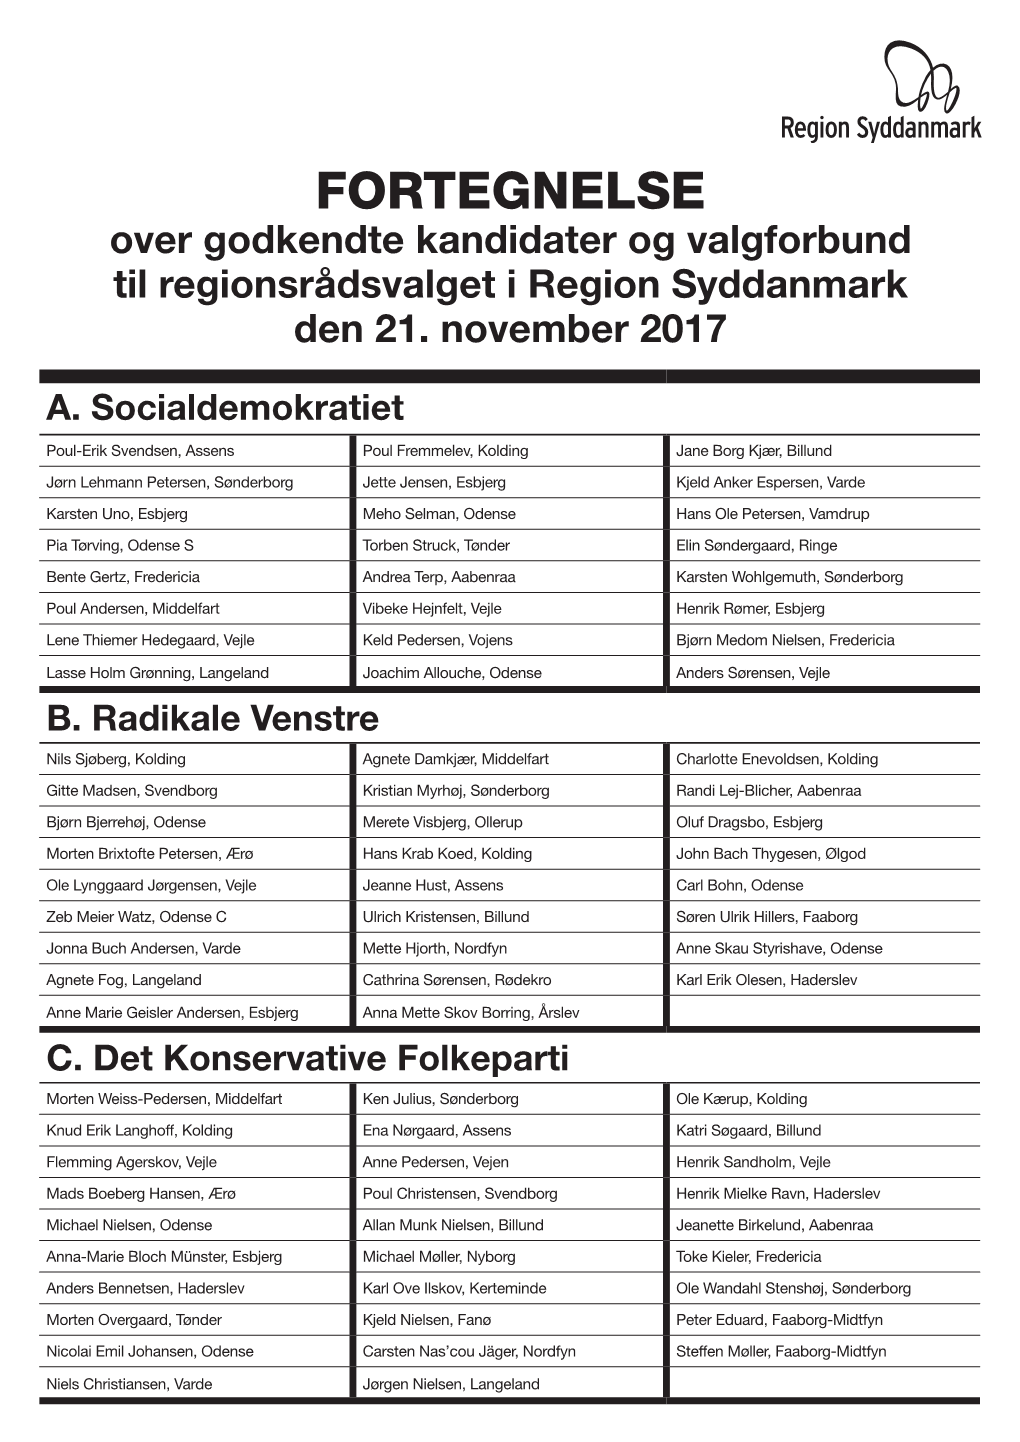 FORTEGNELSE Over Godkendte Kandidater Og Valgforbund Til Regionsrådsvalget I Region Syddanmark Den 21